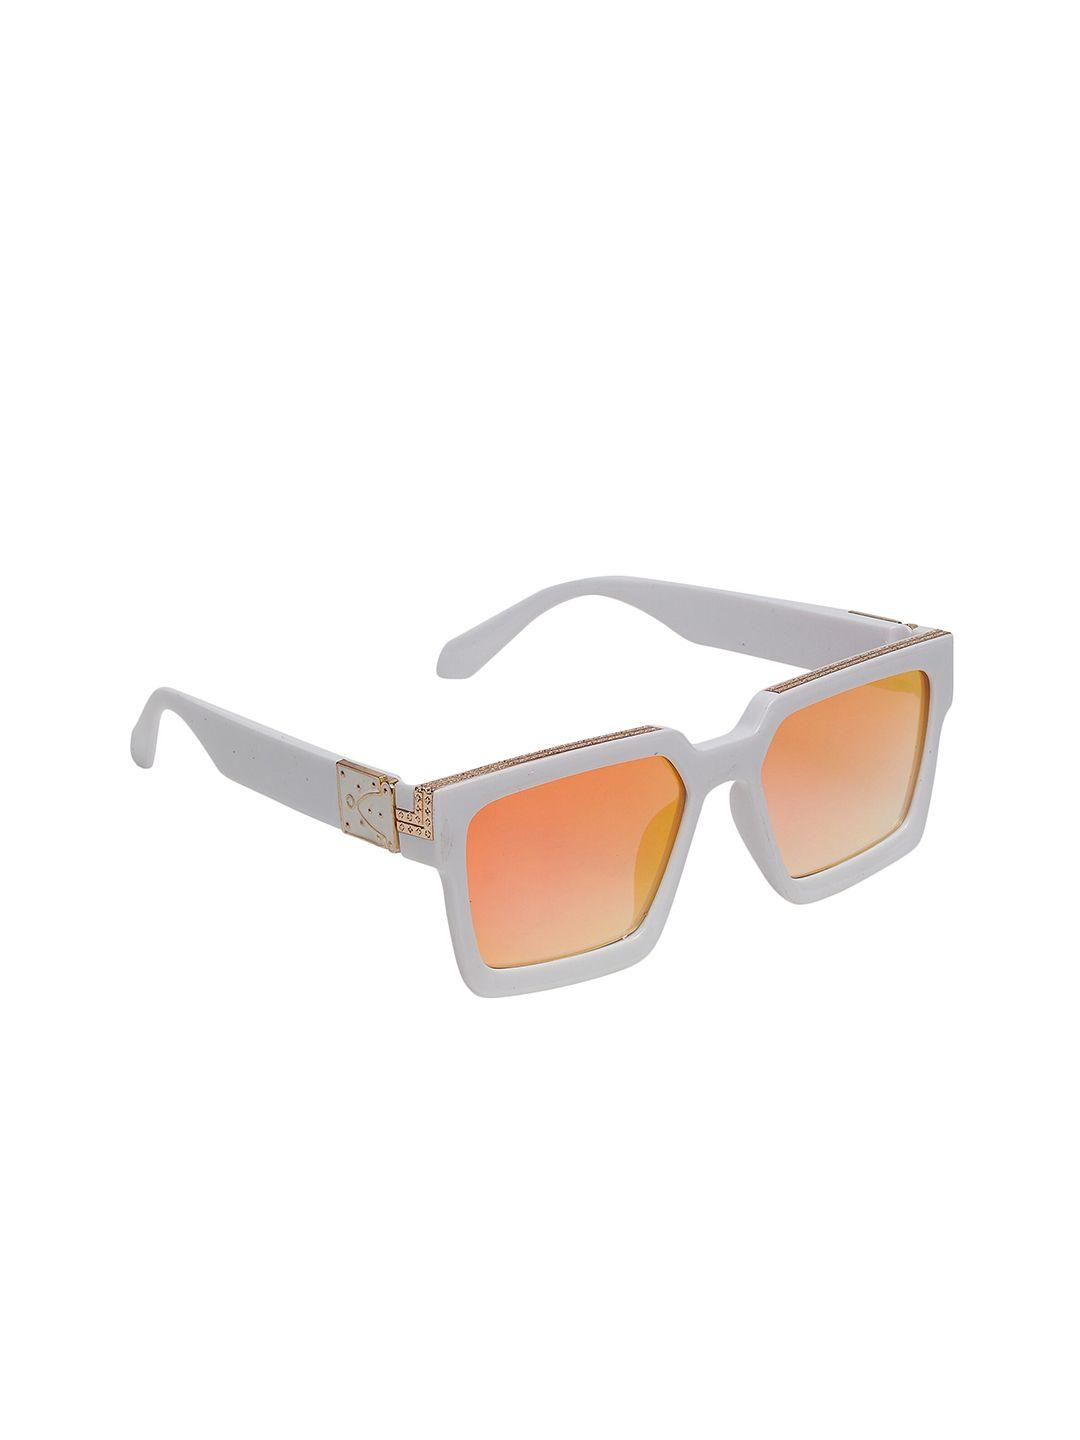 swiss design unisex orange lens & white full rim wayfarer sunglasses